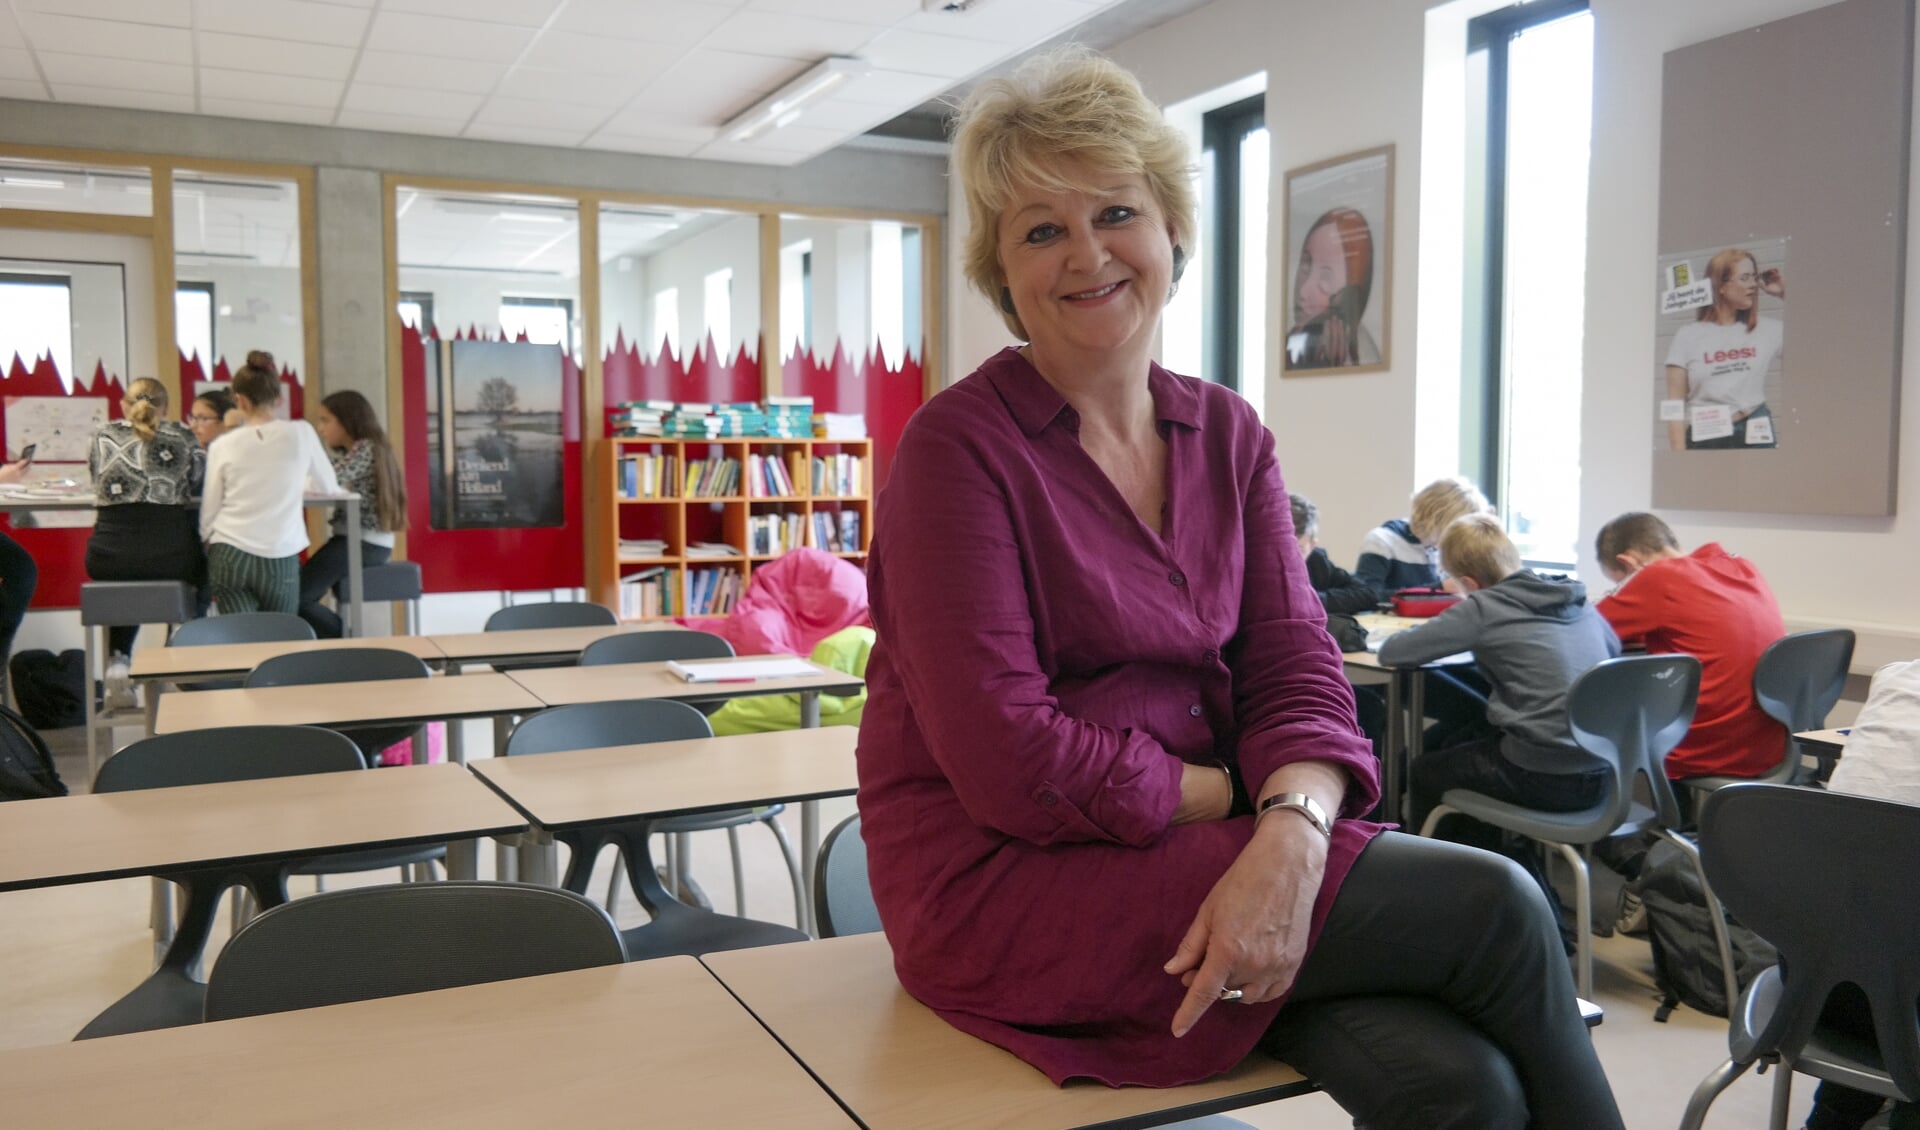 Directeur Gretha Dam van het Lauwers College in Buitenpost te midden van eerste klas-leerlingen in één van de lokalen waar flexlessen plaatsvinden.